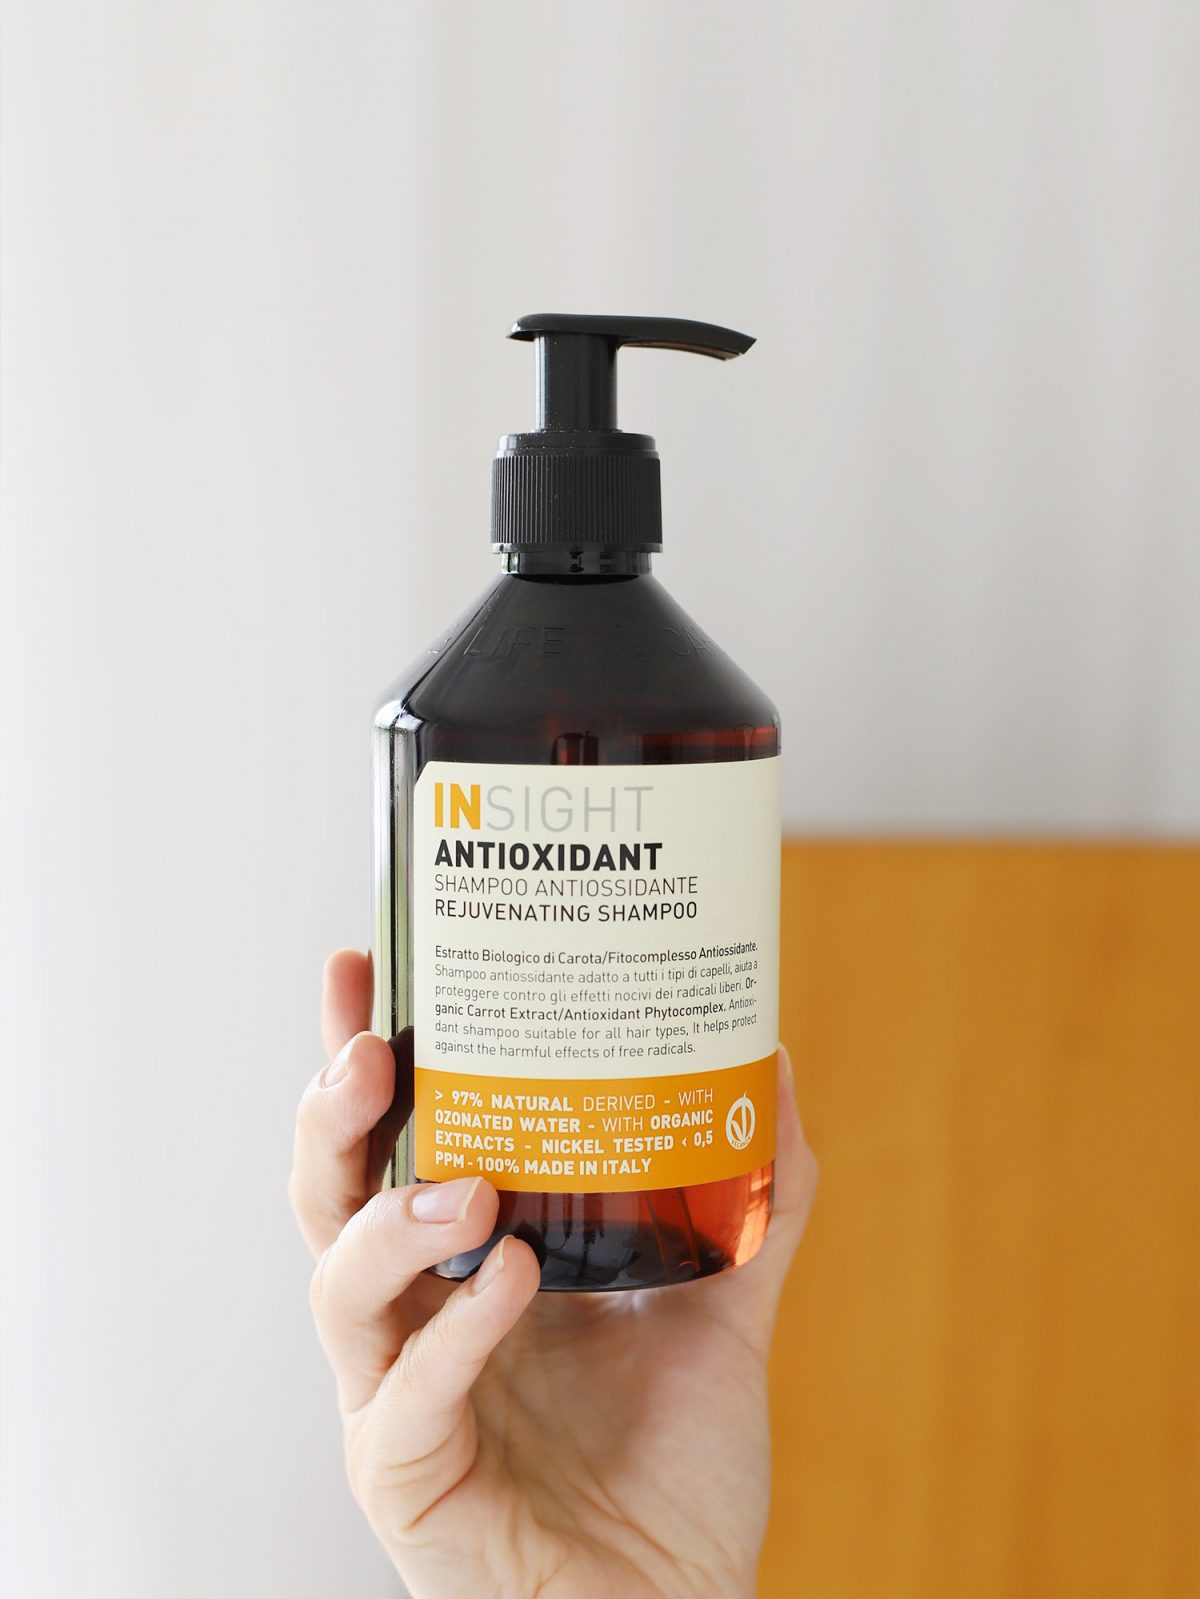 szampon odmładzający, odmładzający szampon do włosów, szampon z antyoksydantami, szampon insight antioxidant, szampon do włosów z antyoksydantami